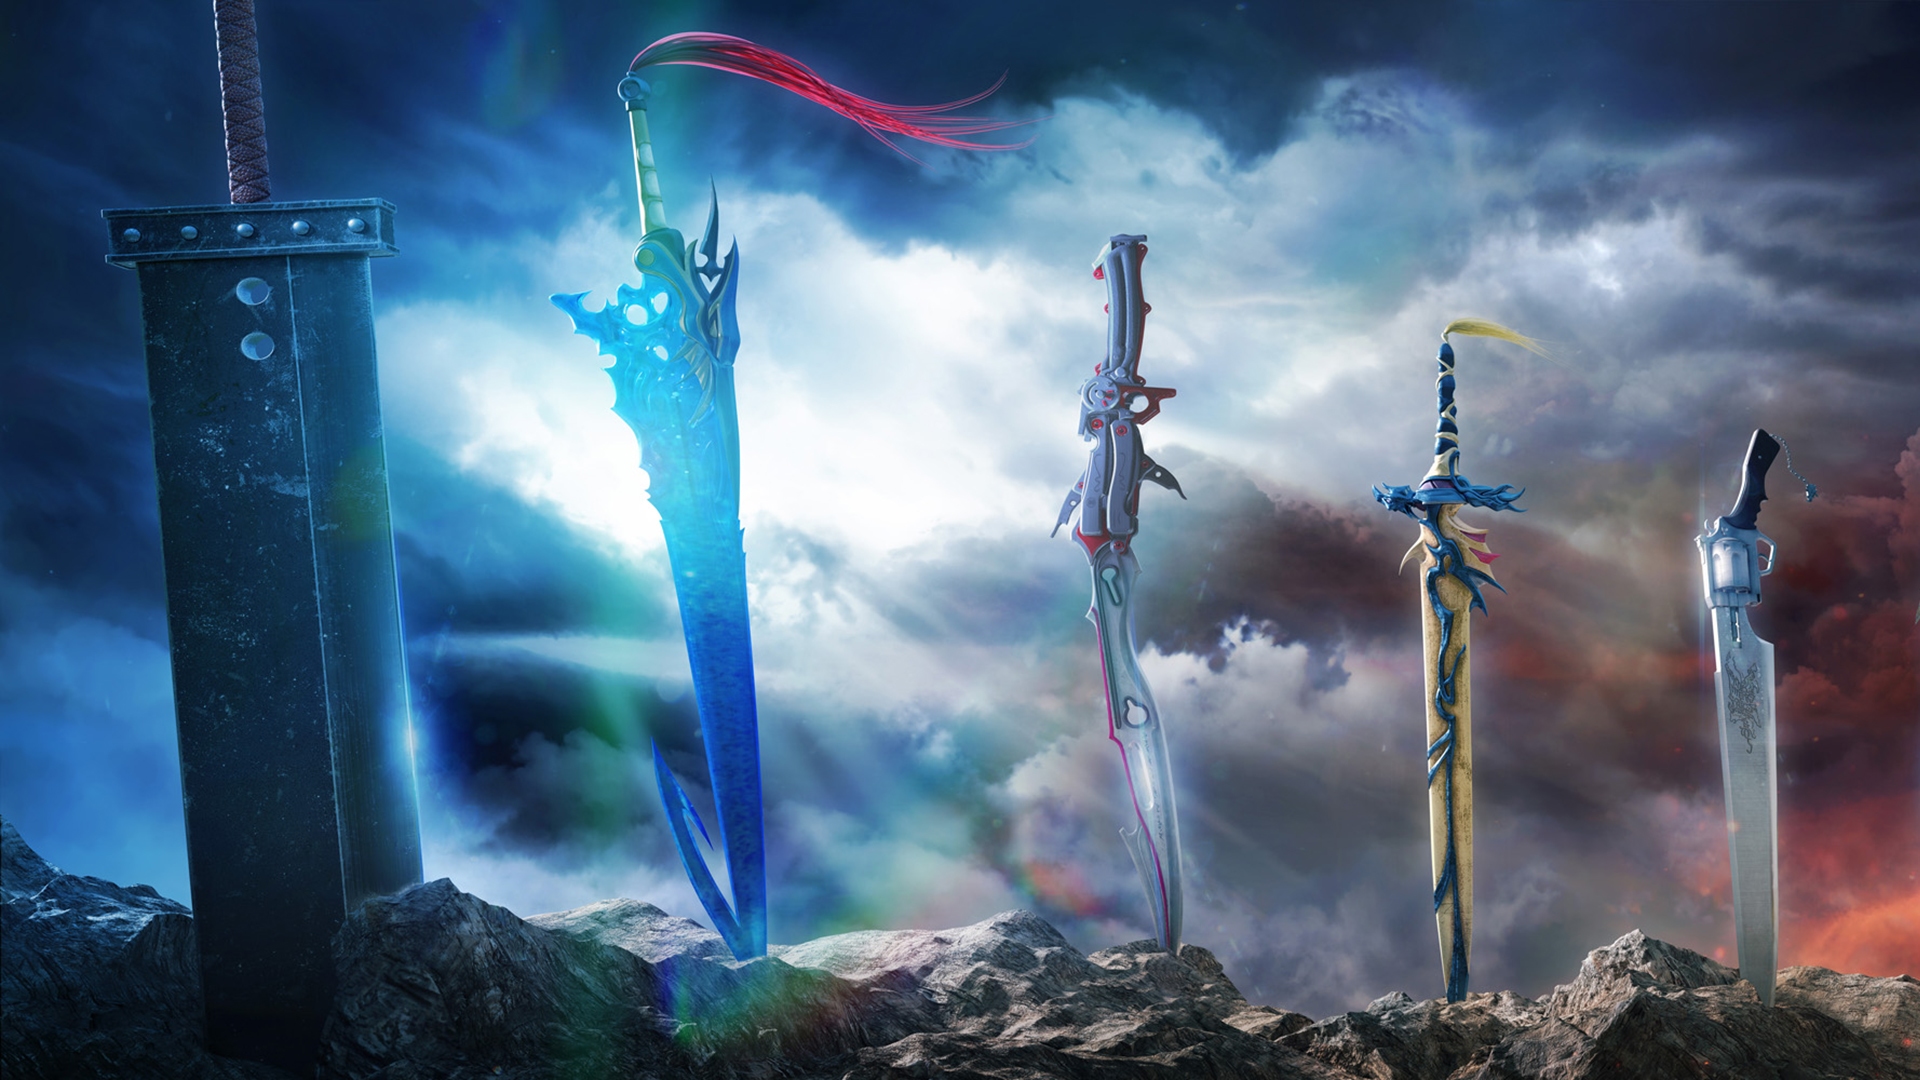 Популярные заставки и фоны Dissidia Final Fantasy Nt на компьютер